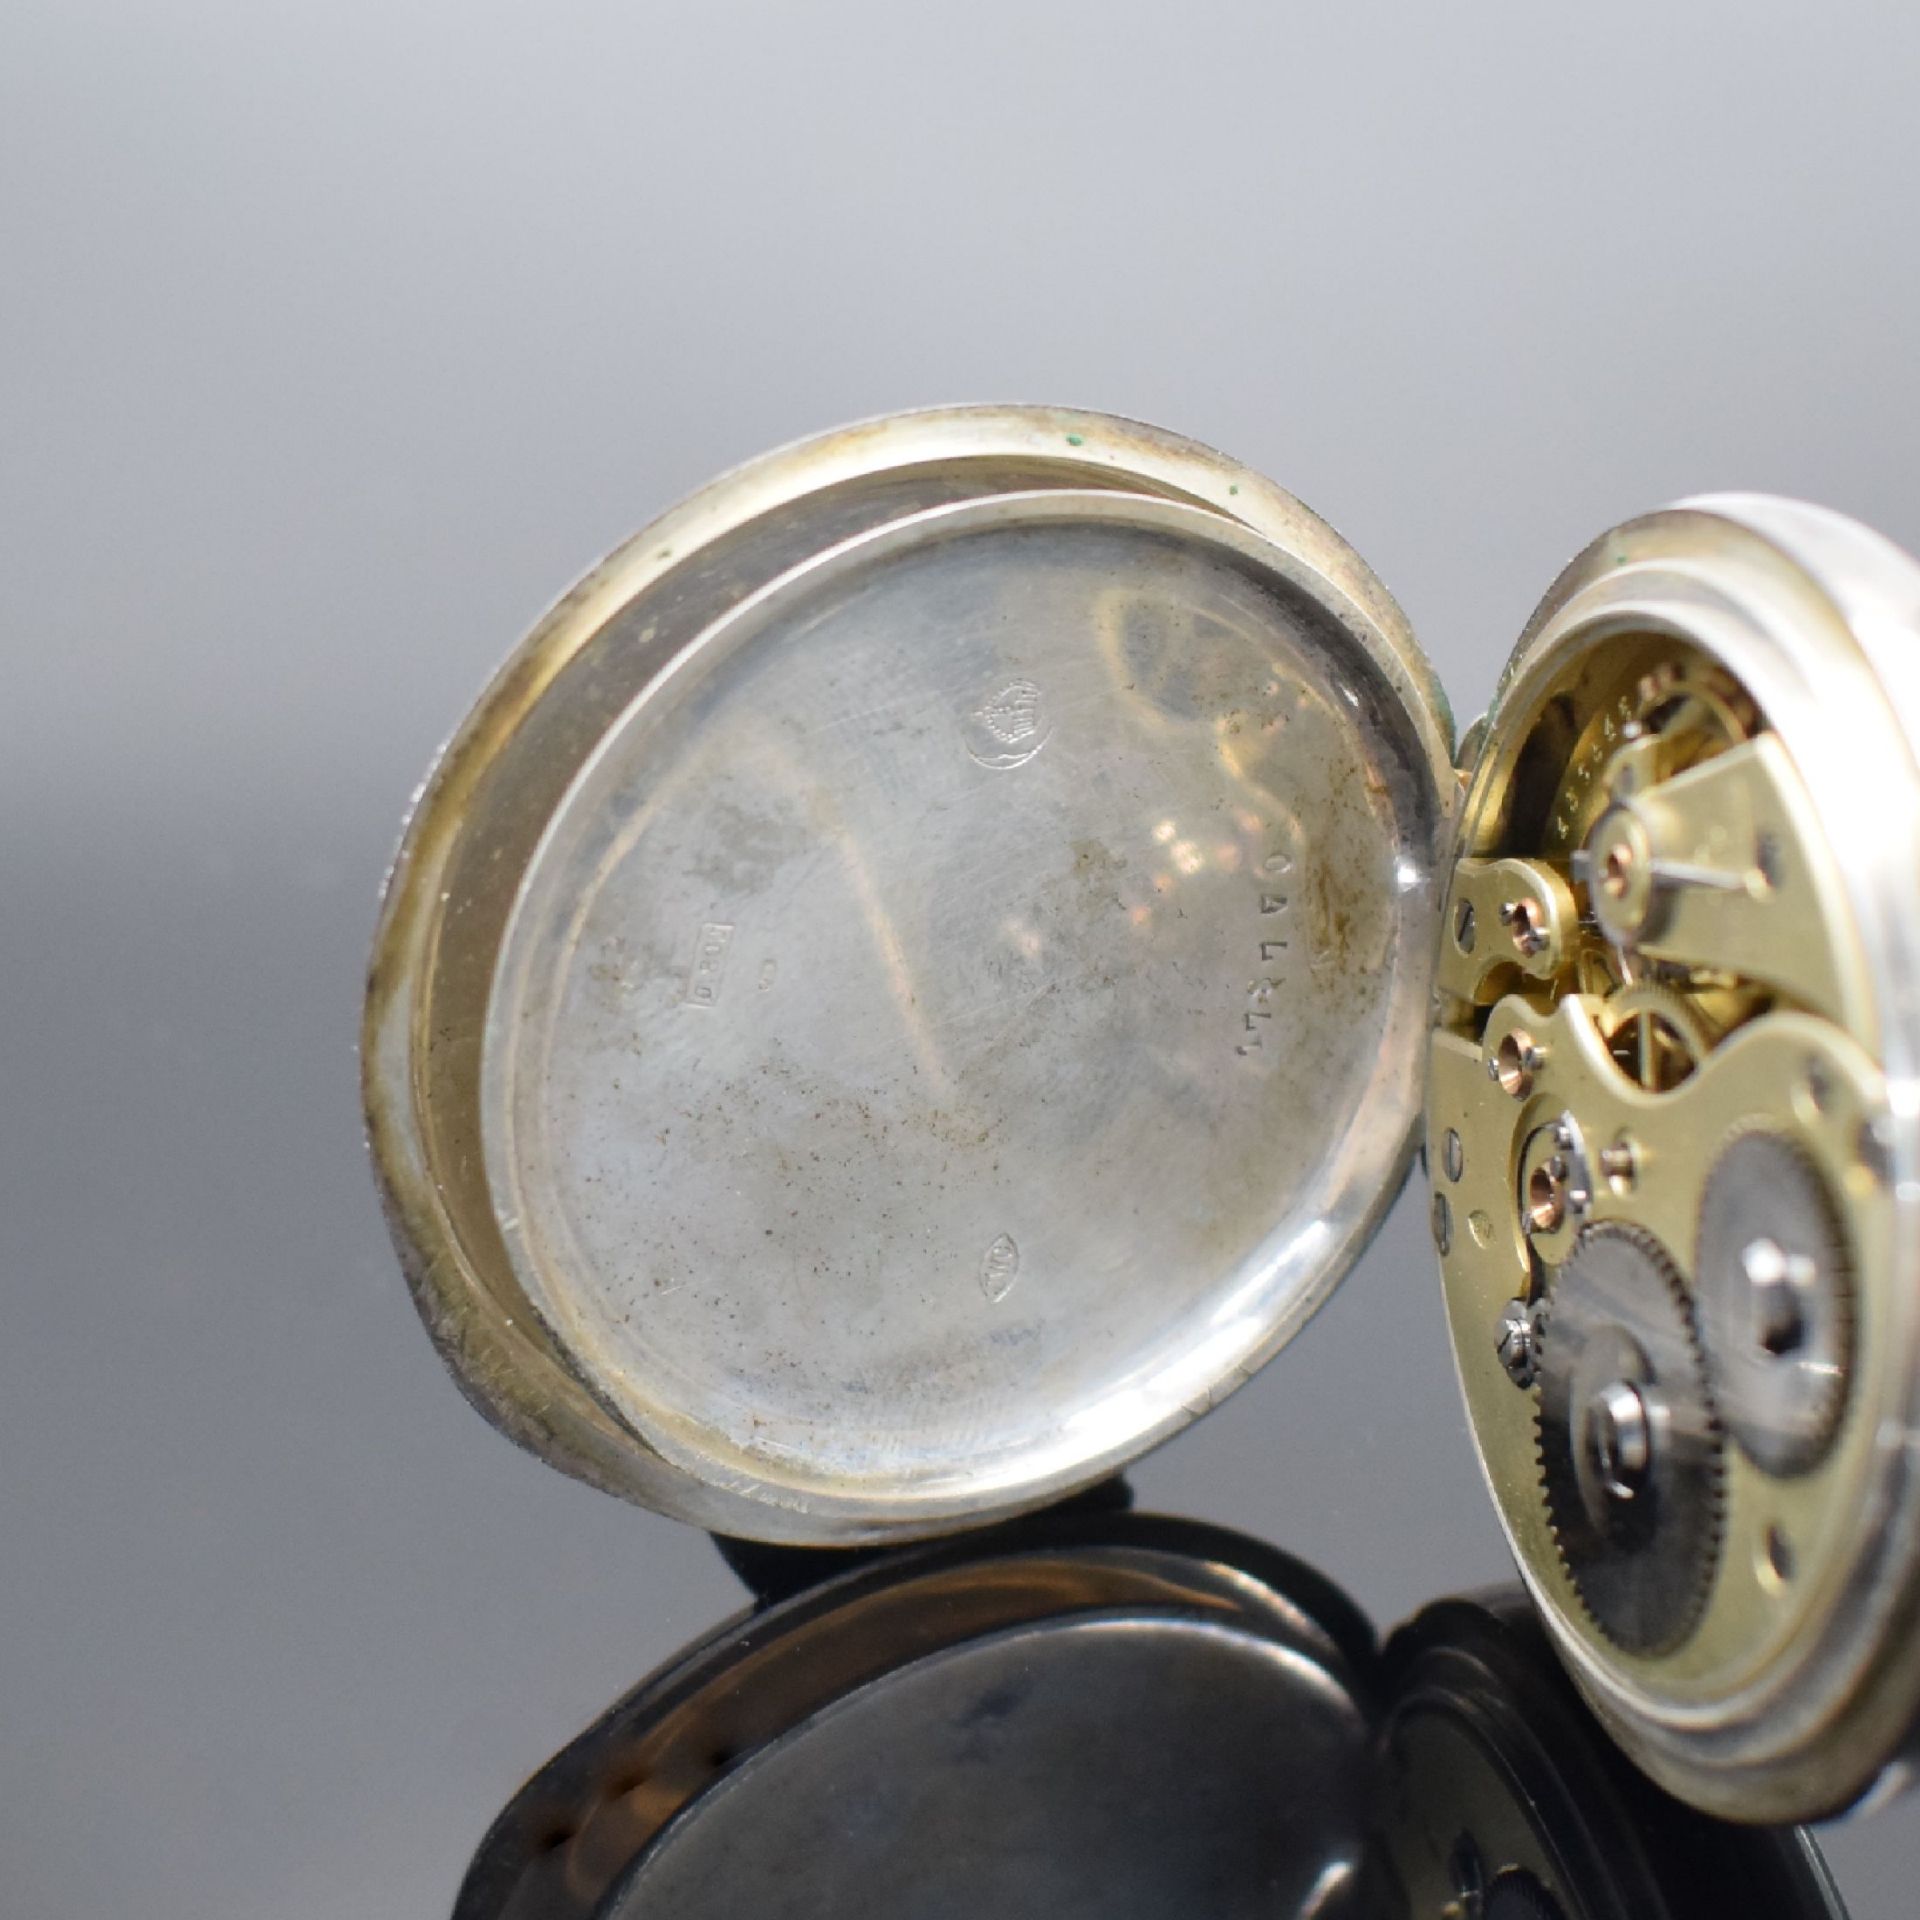 IWC offene Taschenuhr in 800er Silber,  Schweiz um 1900, - Bild 5 aus 6